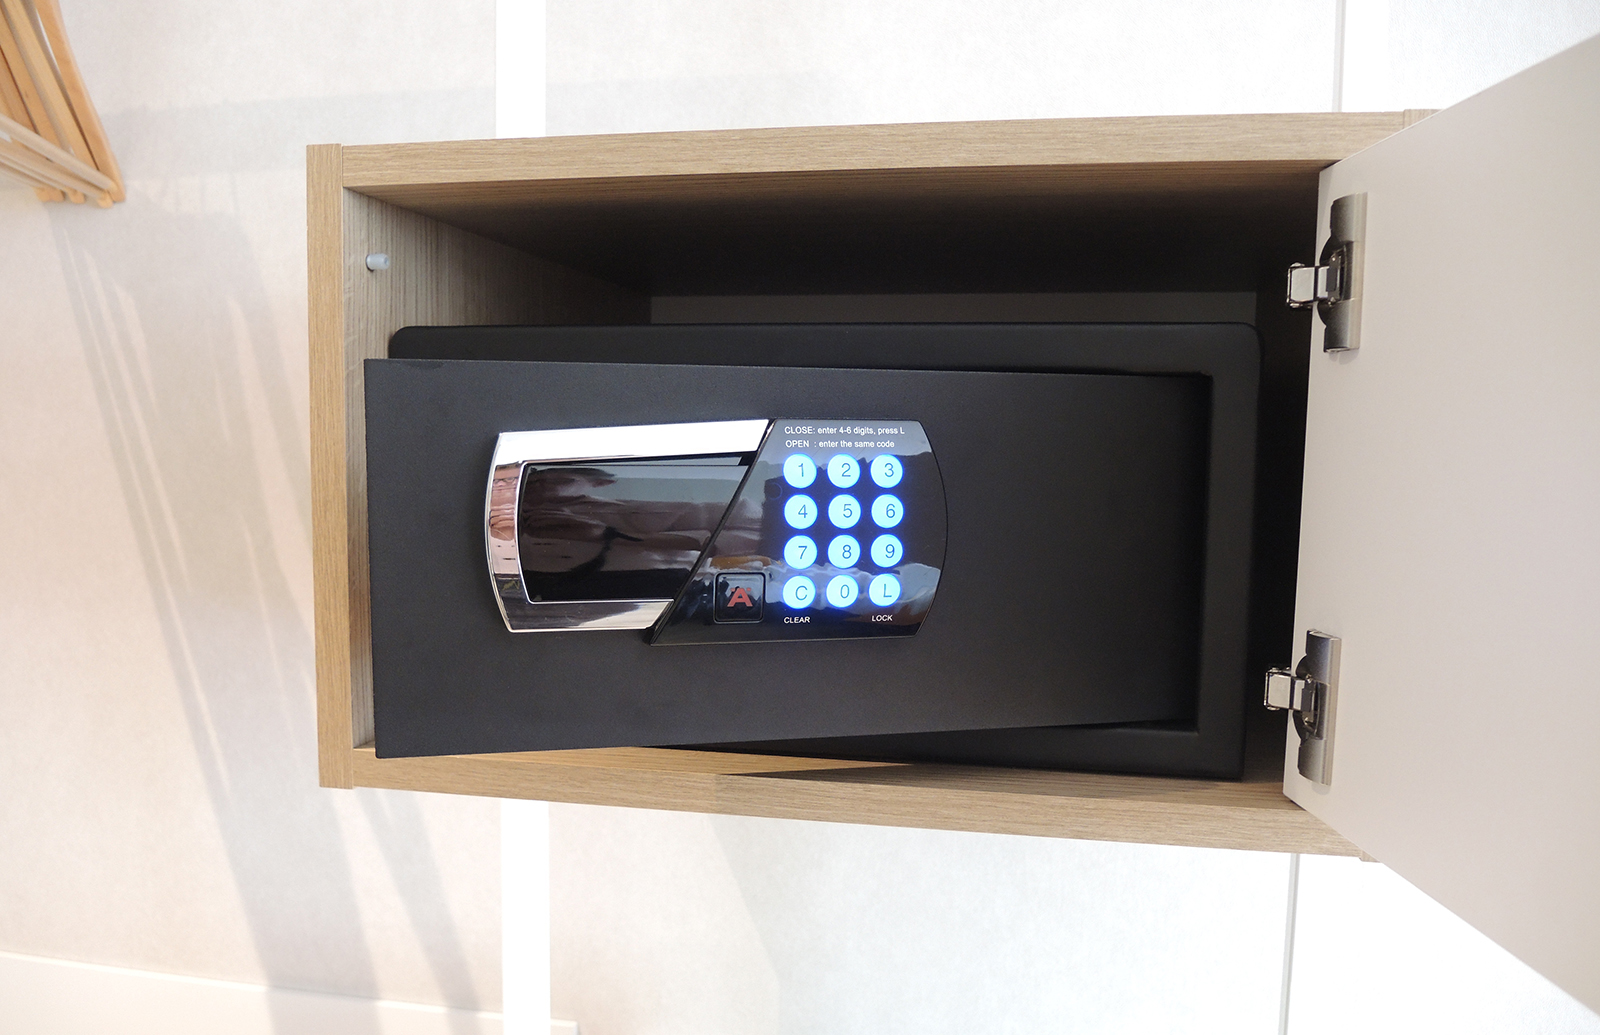 Mini-safe voorzien van een elektronisch cijferslot met geheugen en LED display.